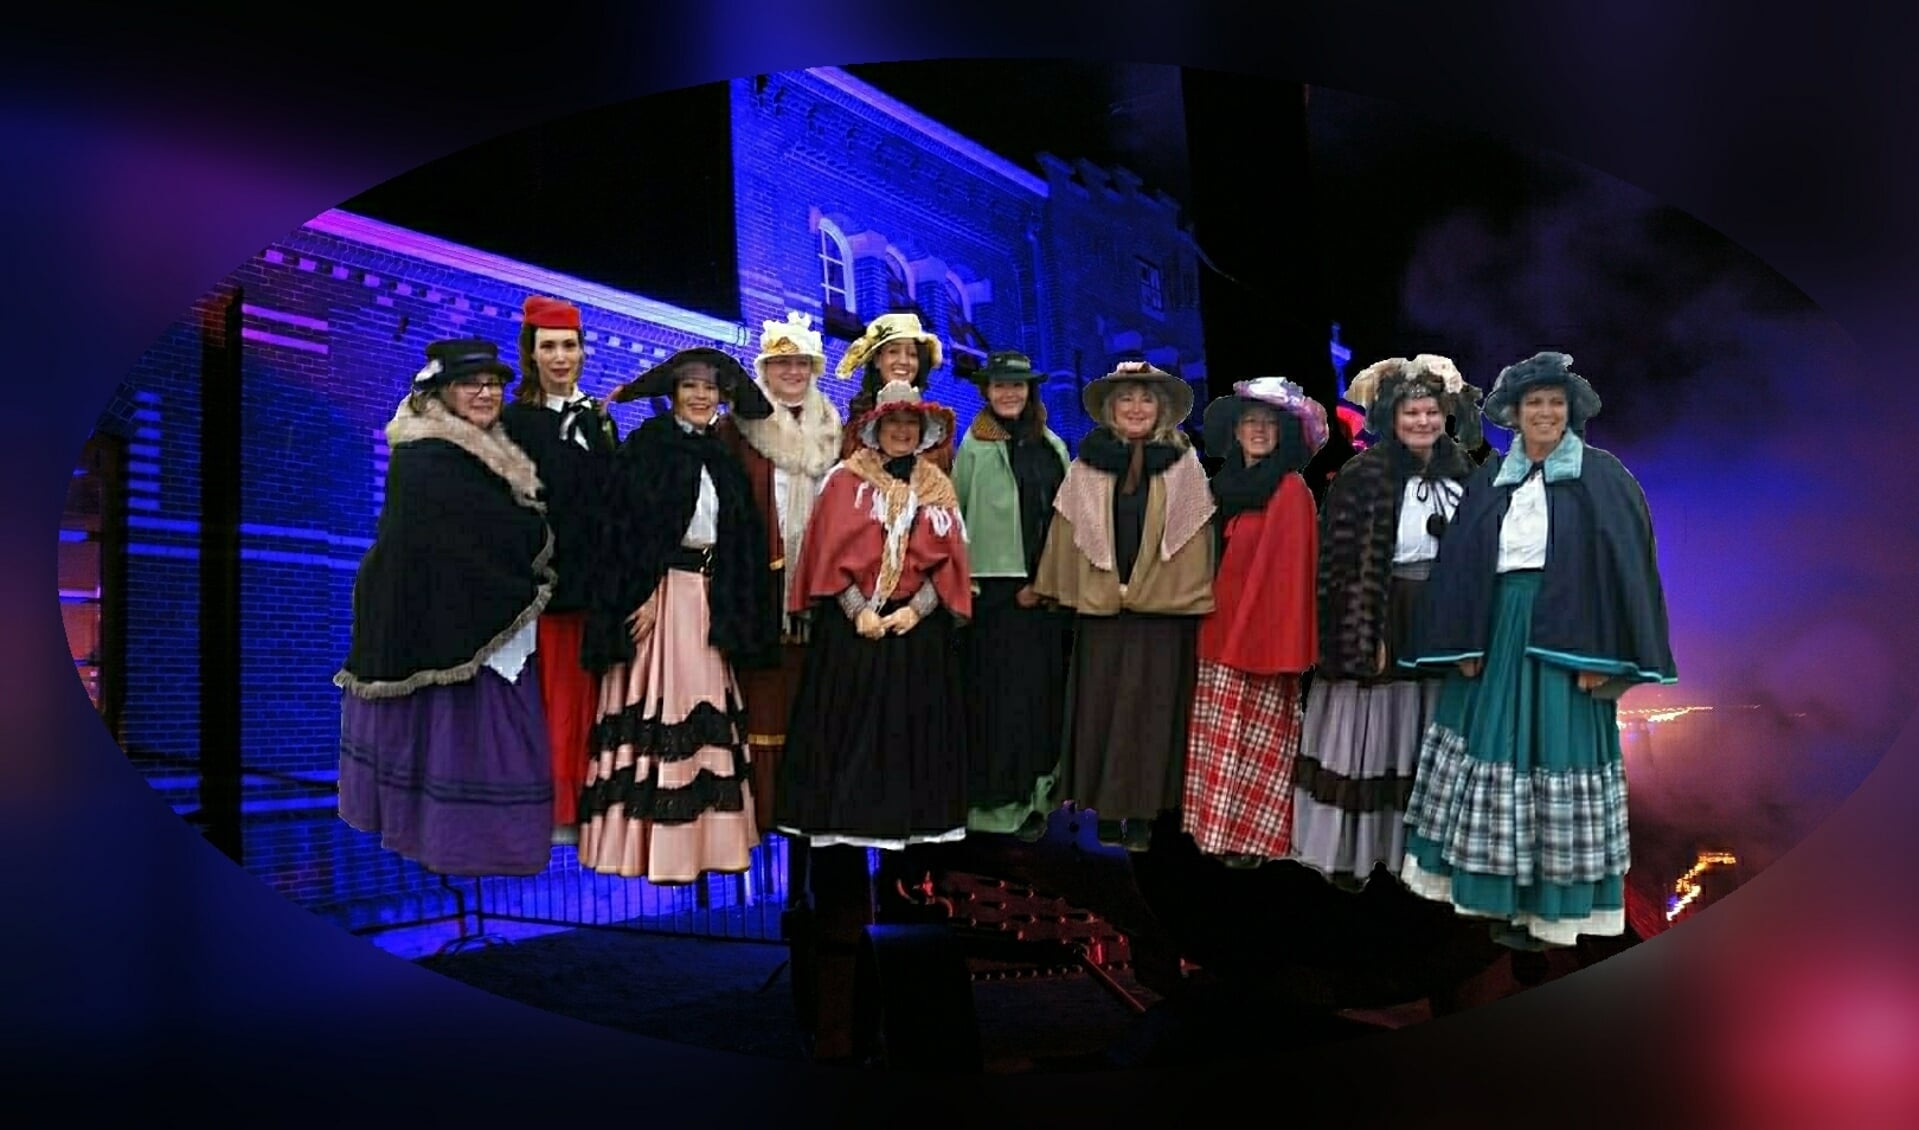 De vrijwilligers van het Stoommachinemuseum zijn verkleed in Dickensstijl.